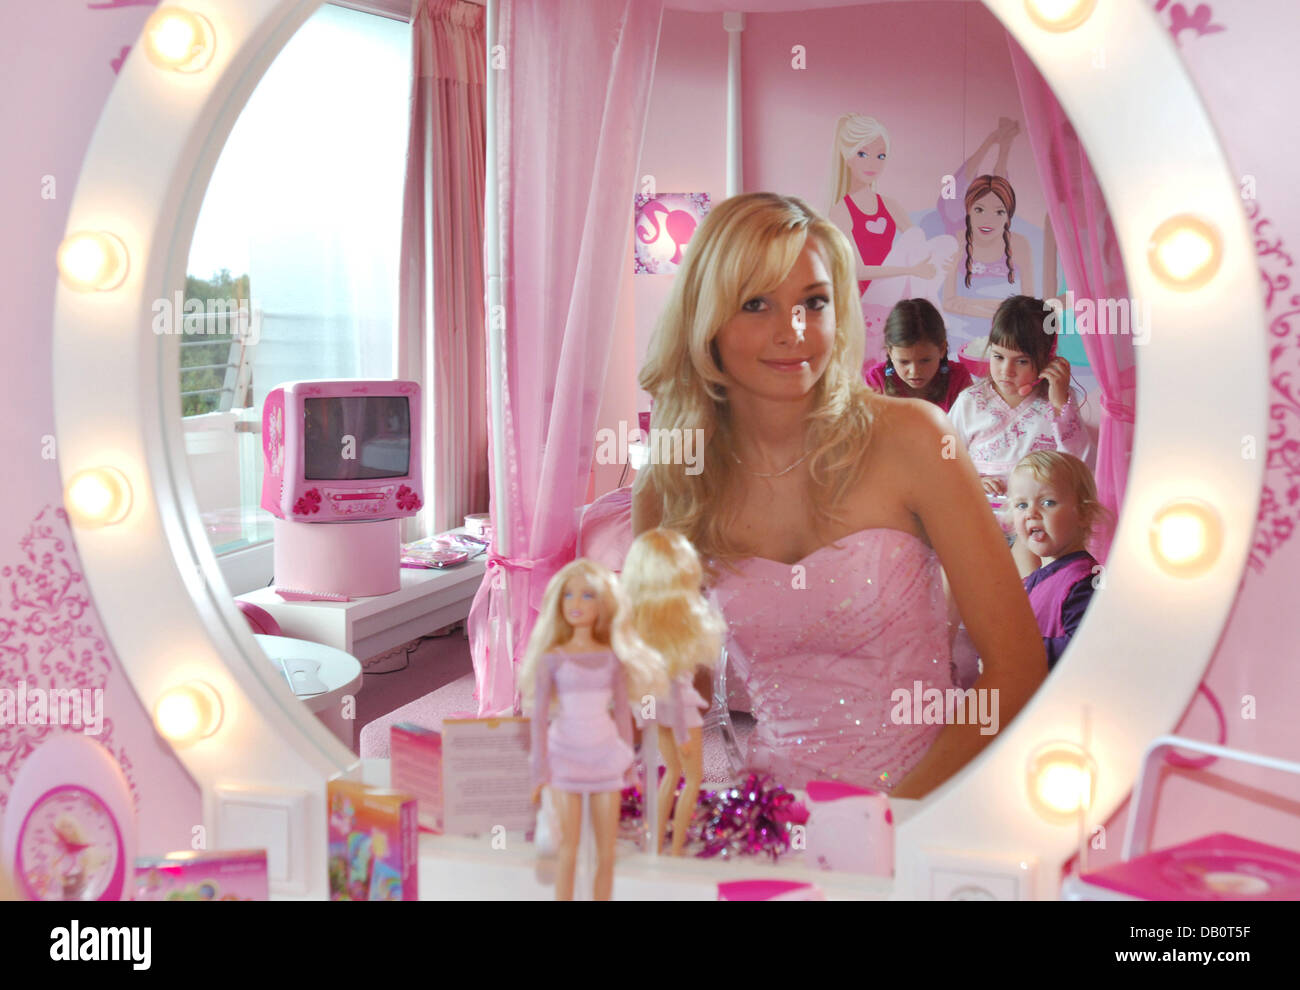 Vize-Miss Deutschland Juliane Brändle posiert vor einem Barrbie Spiegel im  Maritim ClubHotel Timmendorfer Strand, Deutschland, 22. September 2007. Das  Hotel öffnet ein Barbie Themenzimmer komplett in rosa eingerichtet und  ausgestattet mit viele